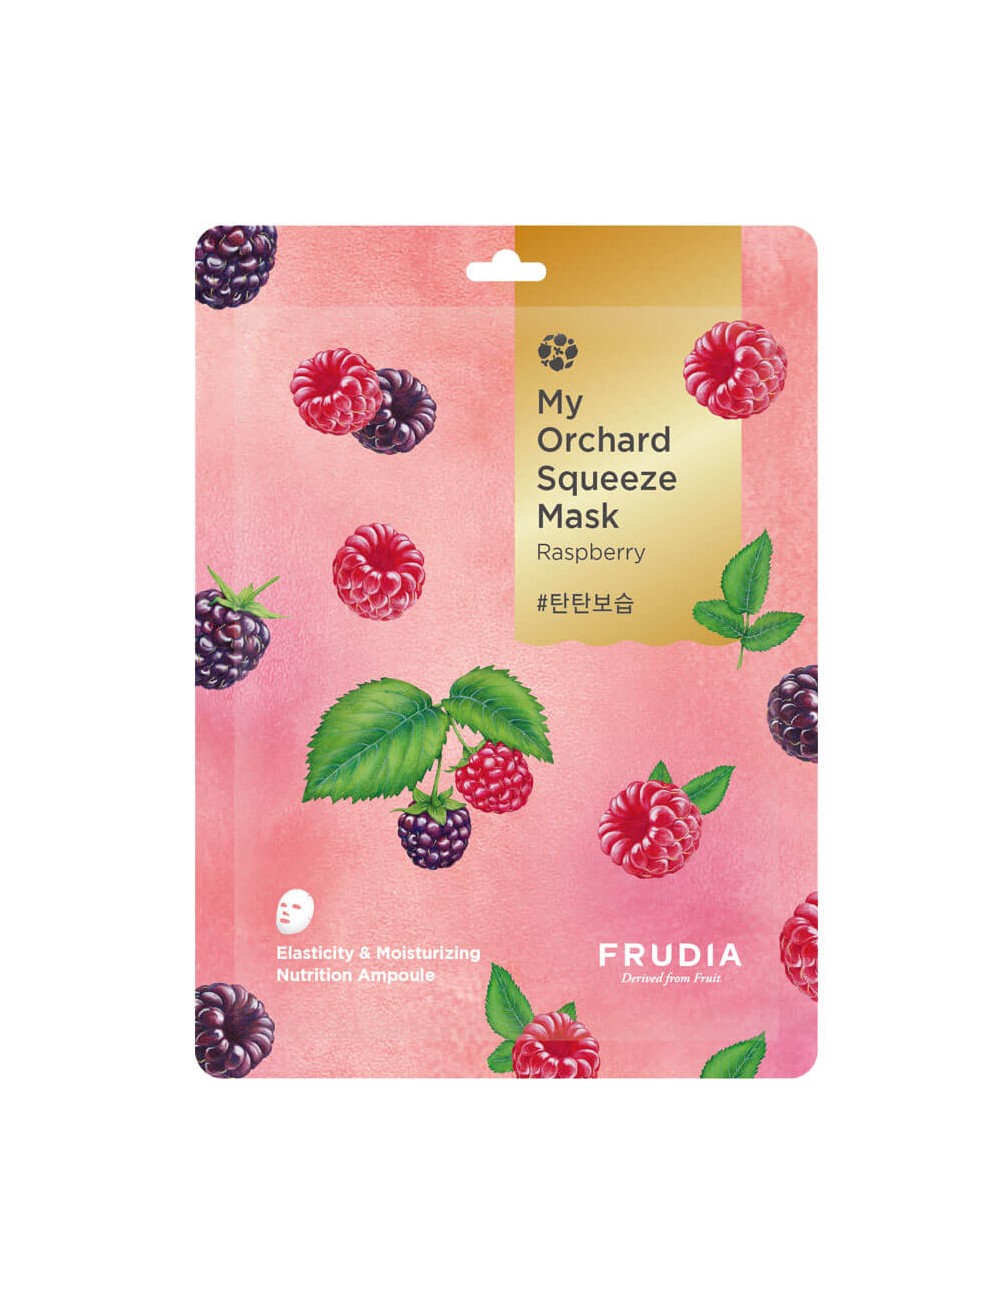 Mascarillas Coreanas de Hoja al mejor precio: My Orchard Squeeze Mask Raspberry Firmeza y Elasticidad de Frudia en Skin Thinks - Piel Seca